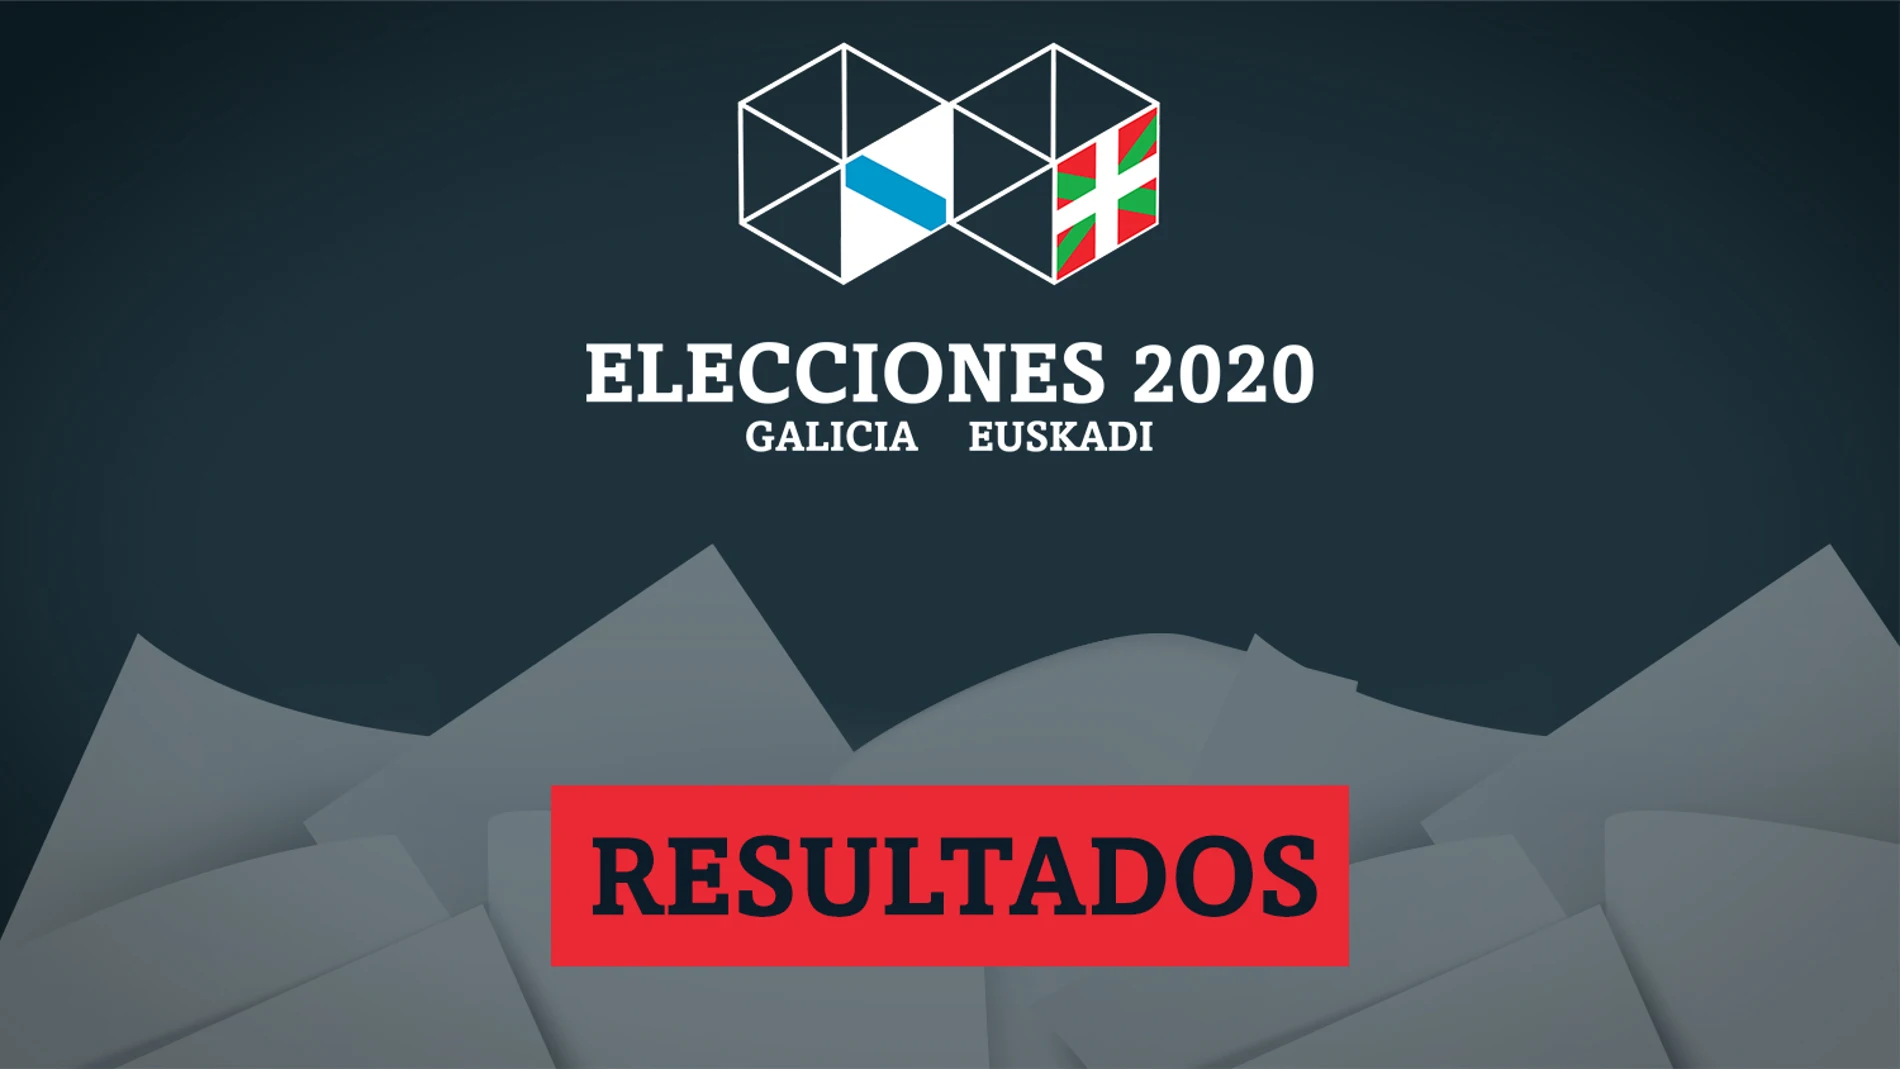 Resultado y escrutinio de las elecciones en Galicia y País Vasco del 12 de junio